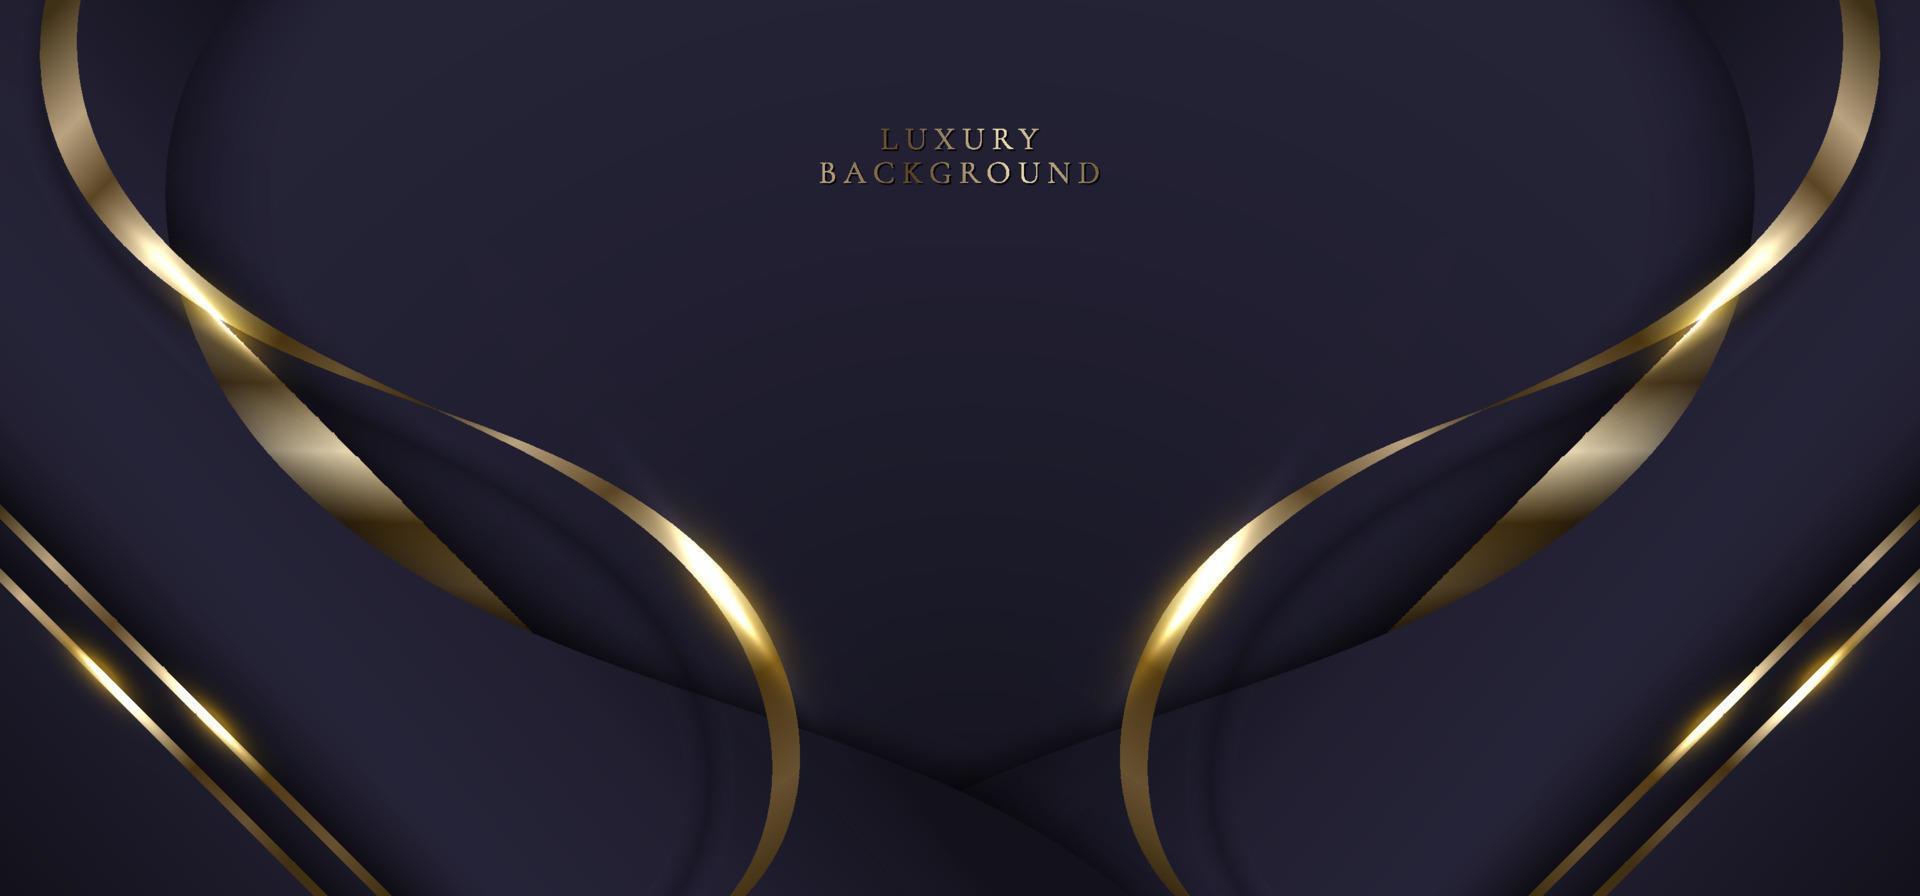 elegante fondo abstracto 3d forma curva púrpura oscuro con líneas de cinta dorada vector